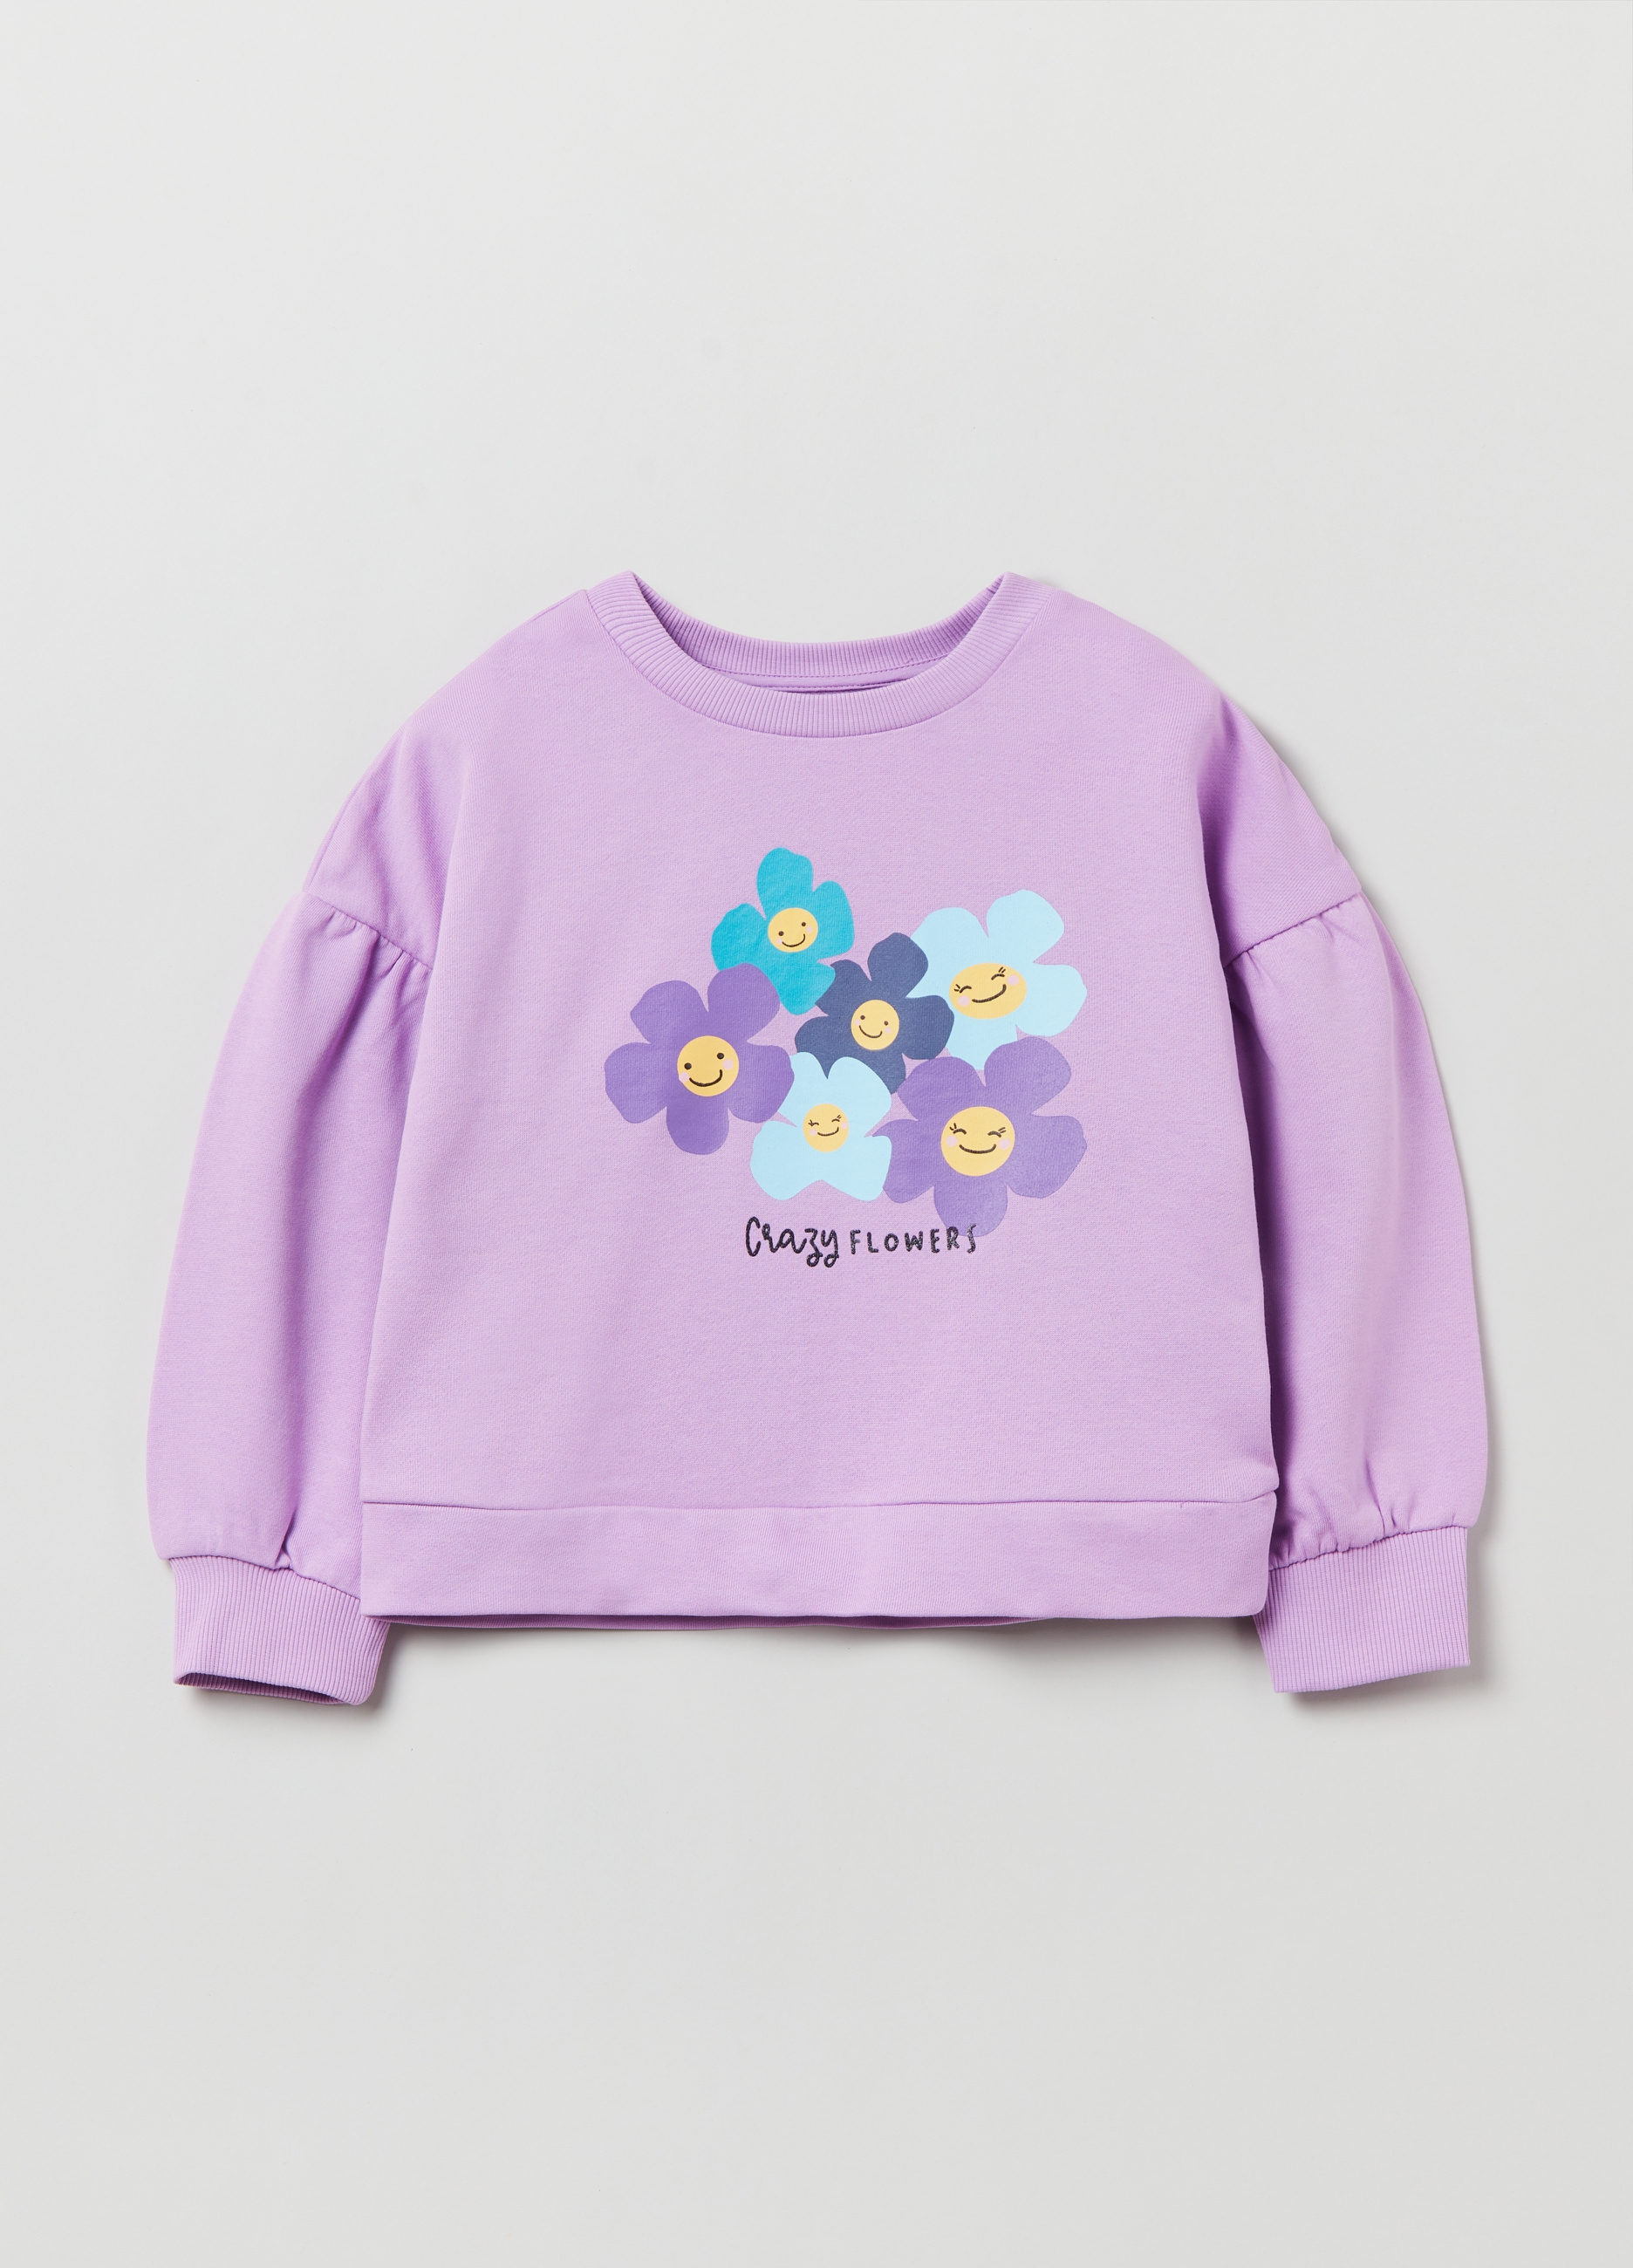 Фуфайка OVS для девочек, фиолетовая, 7-8 лет, 1893089 комплект для девочек фуфайка трикотажная футболка брюки текстильные